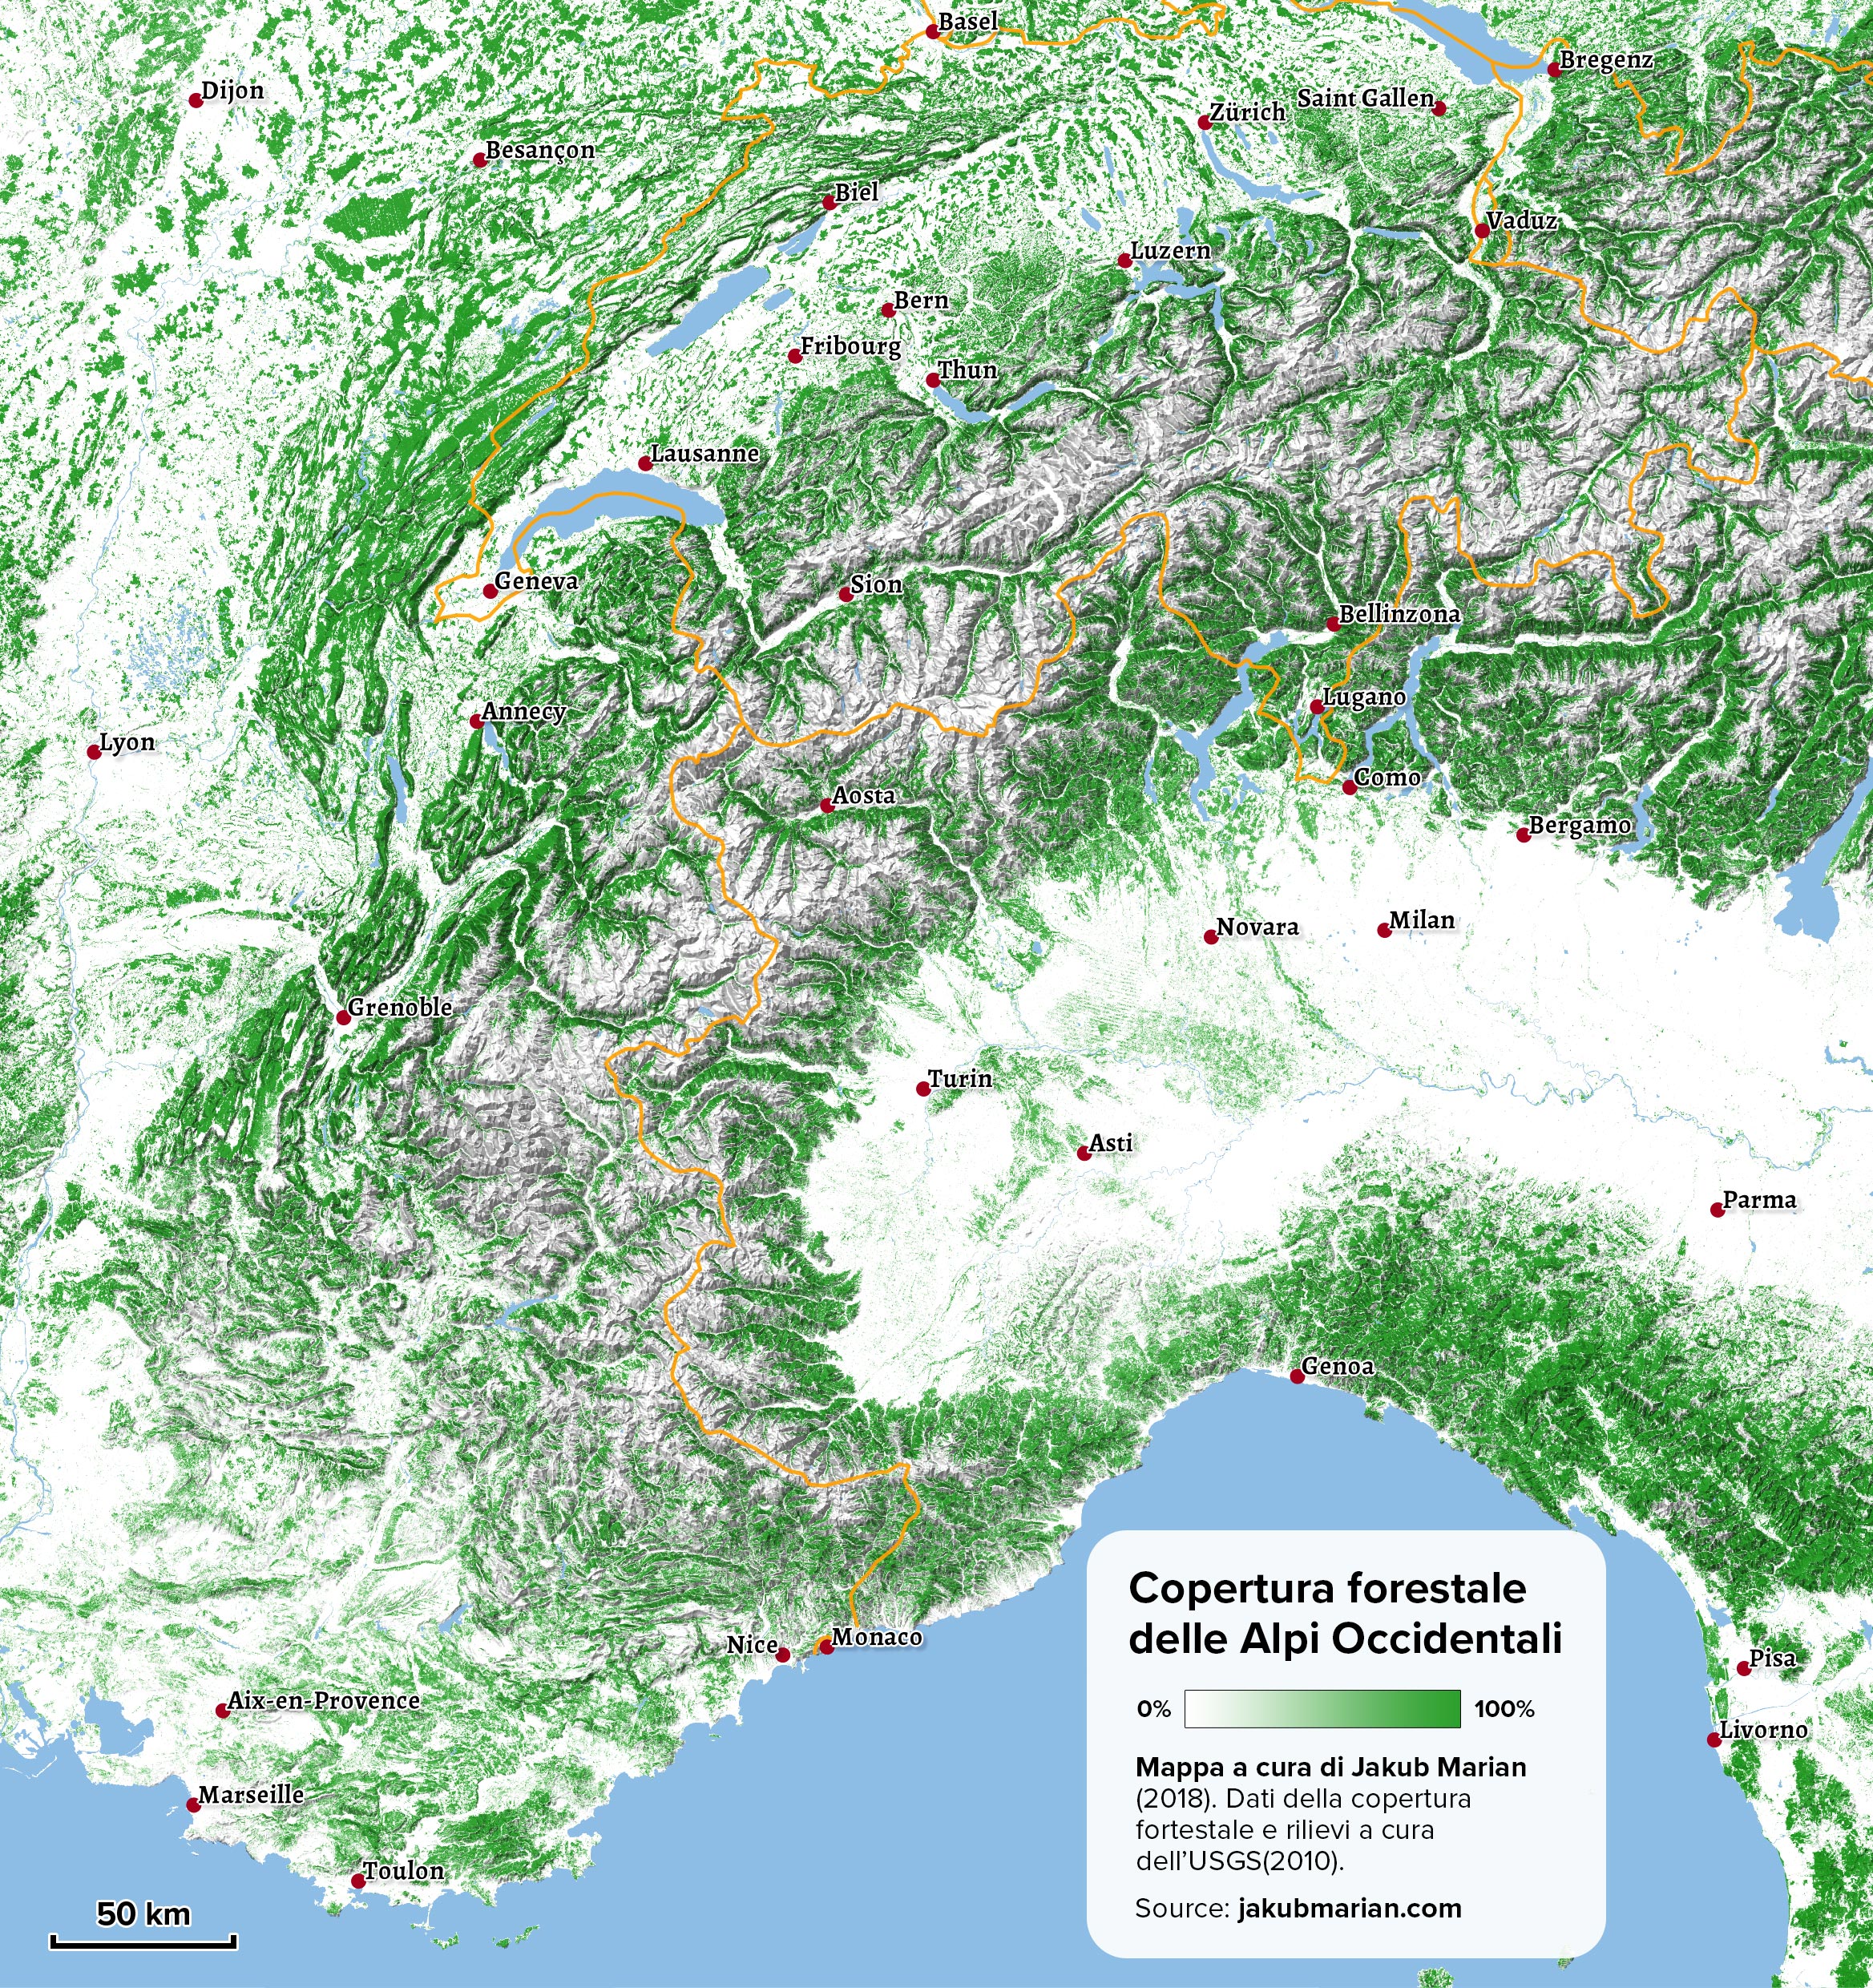 Copertura forestale delle Alpi Occidentali